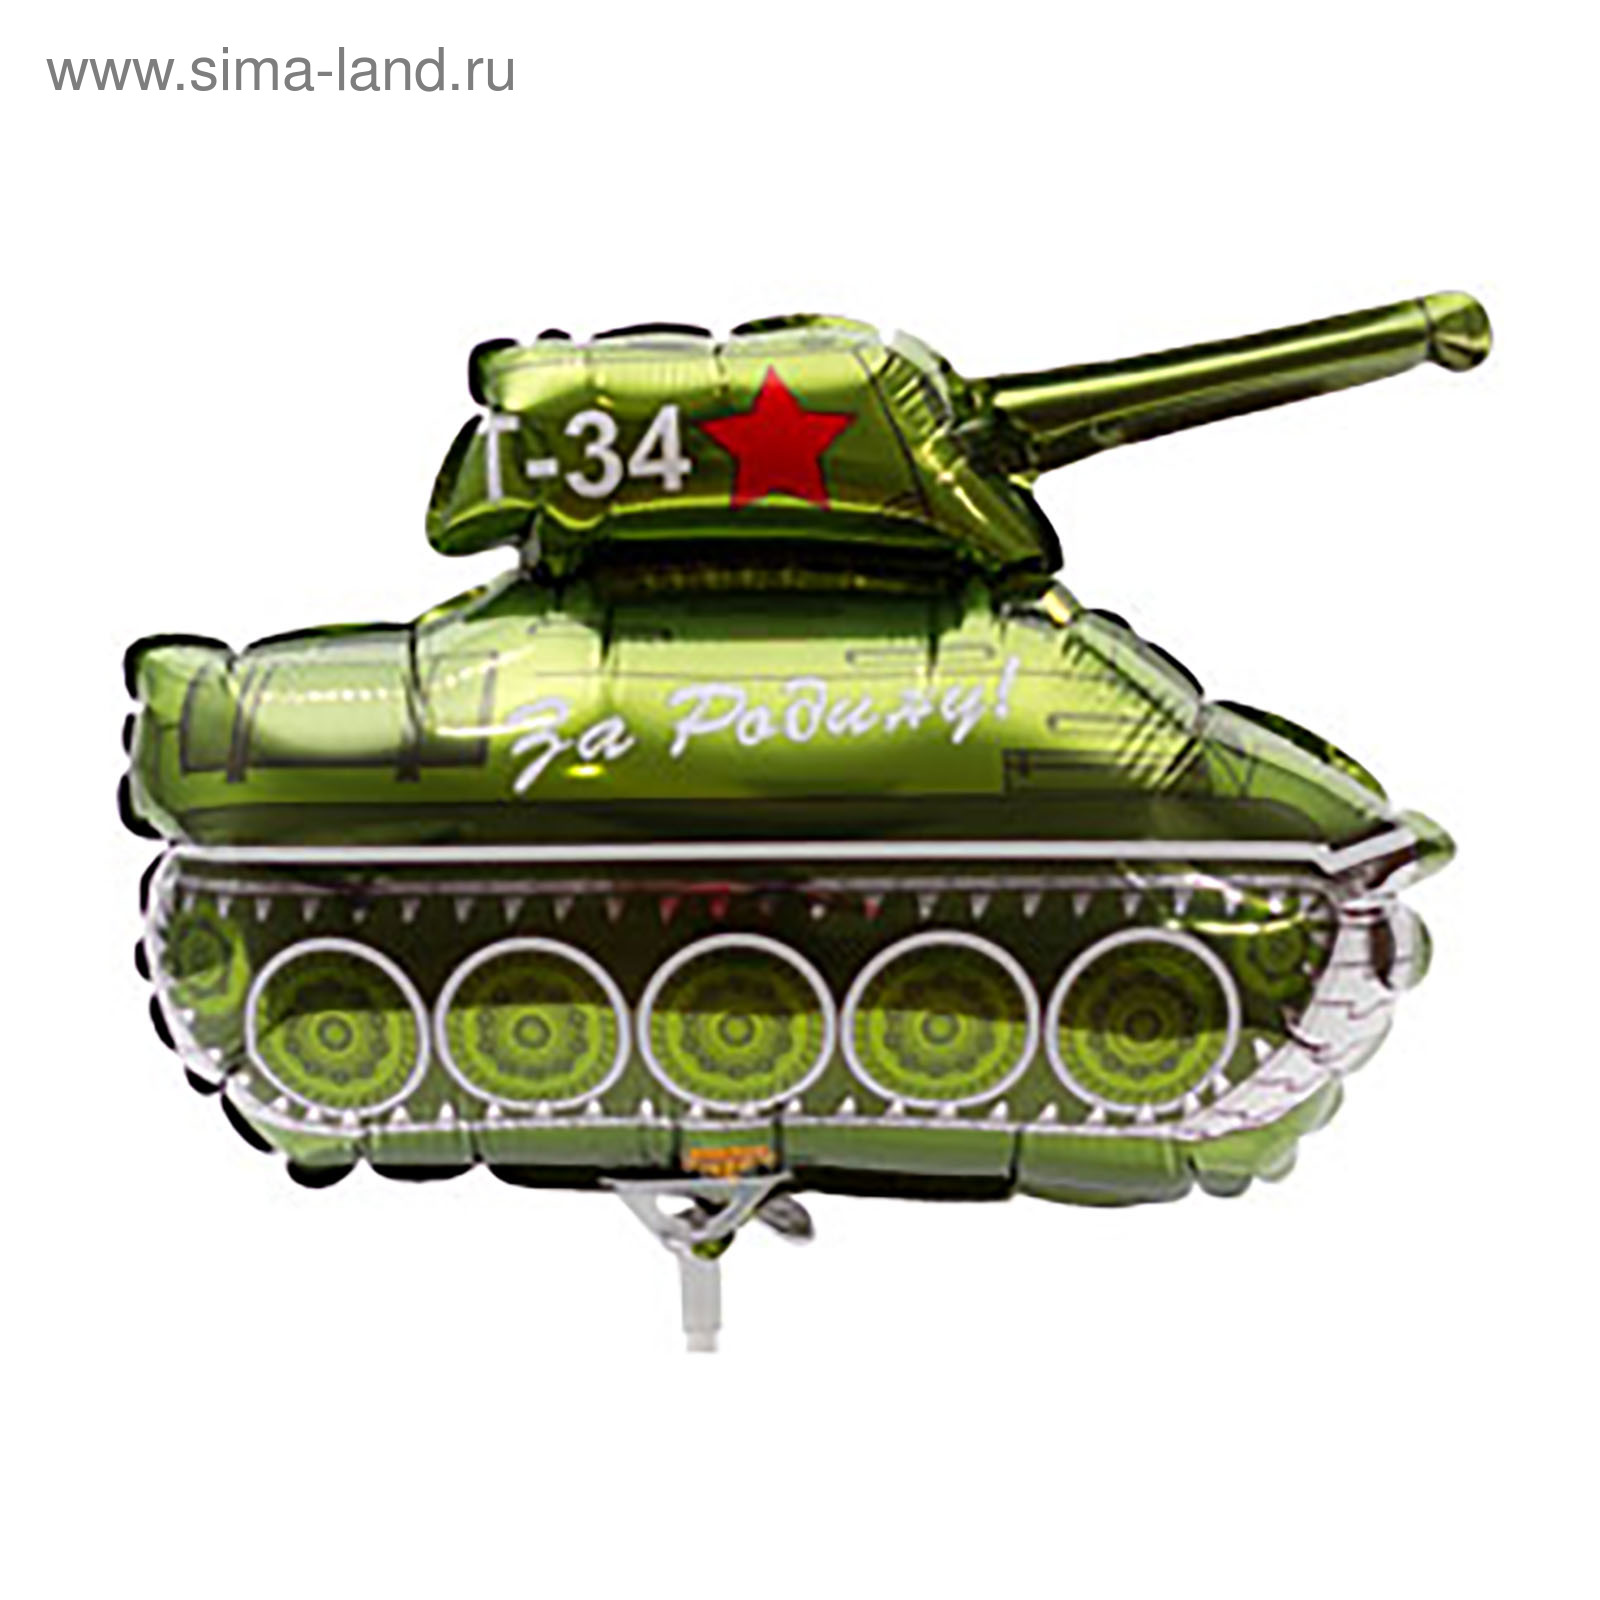 Фольгированный танк т 34